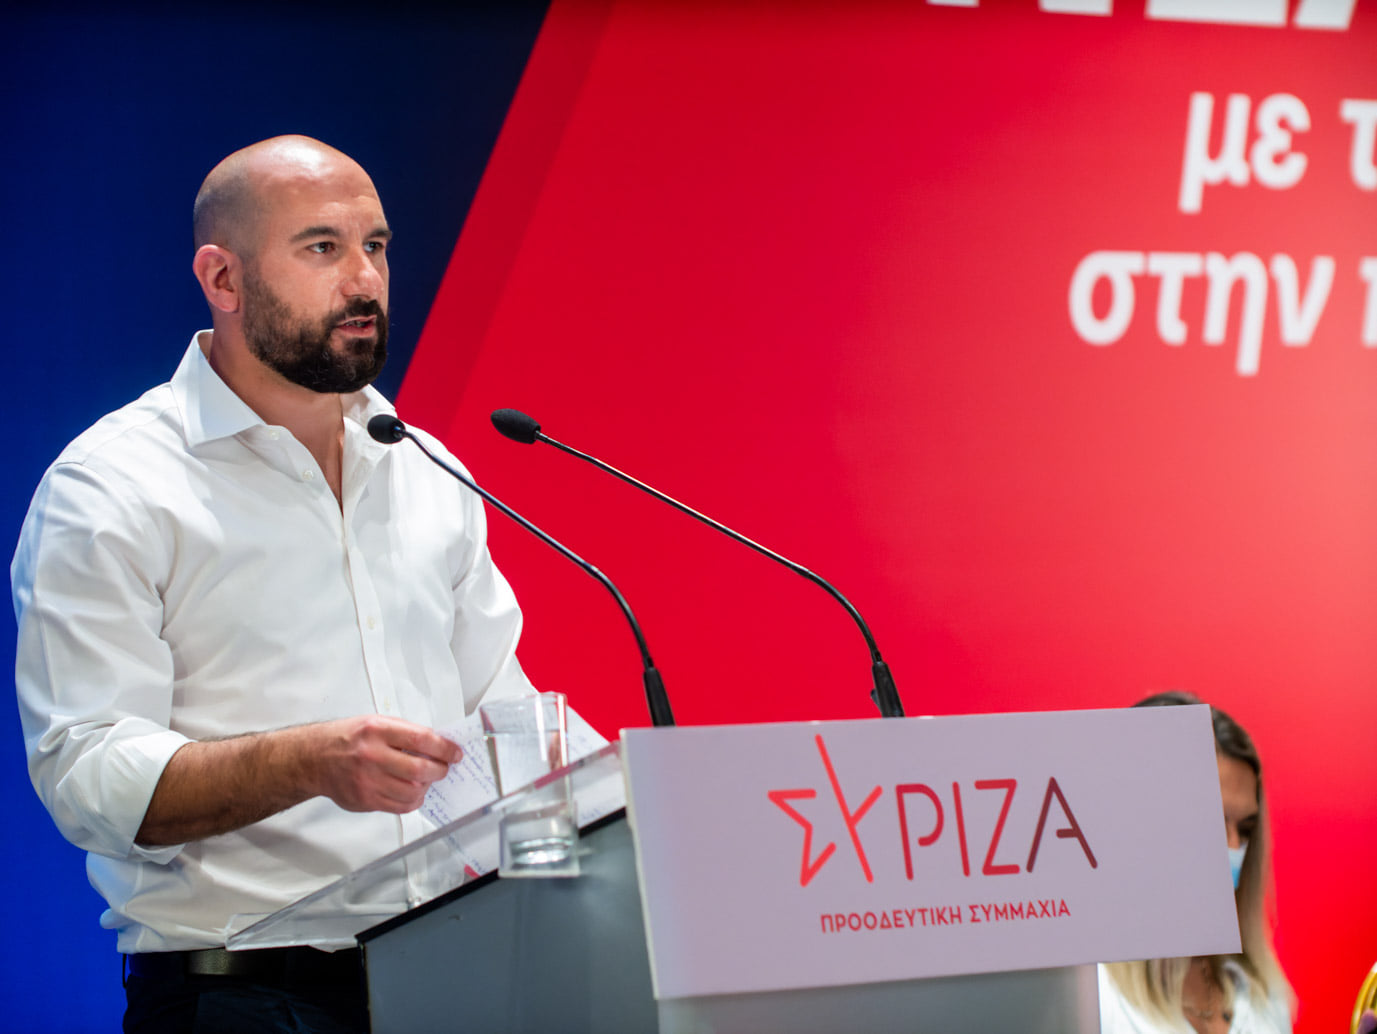 Δ. Τζανακόπουλος: Οι δημοσκοπήσεις είναι το ύστατο καταφύγιο ενός αποτυχημένου πρωθυπουργού-μιας κυβέρνησης που υλοποιεί πολιτικές φτωχοποίησης, πολιτικές που οδηγούν σε σπασμένες πόρτες 